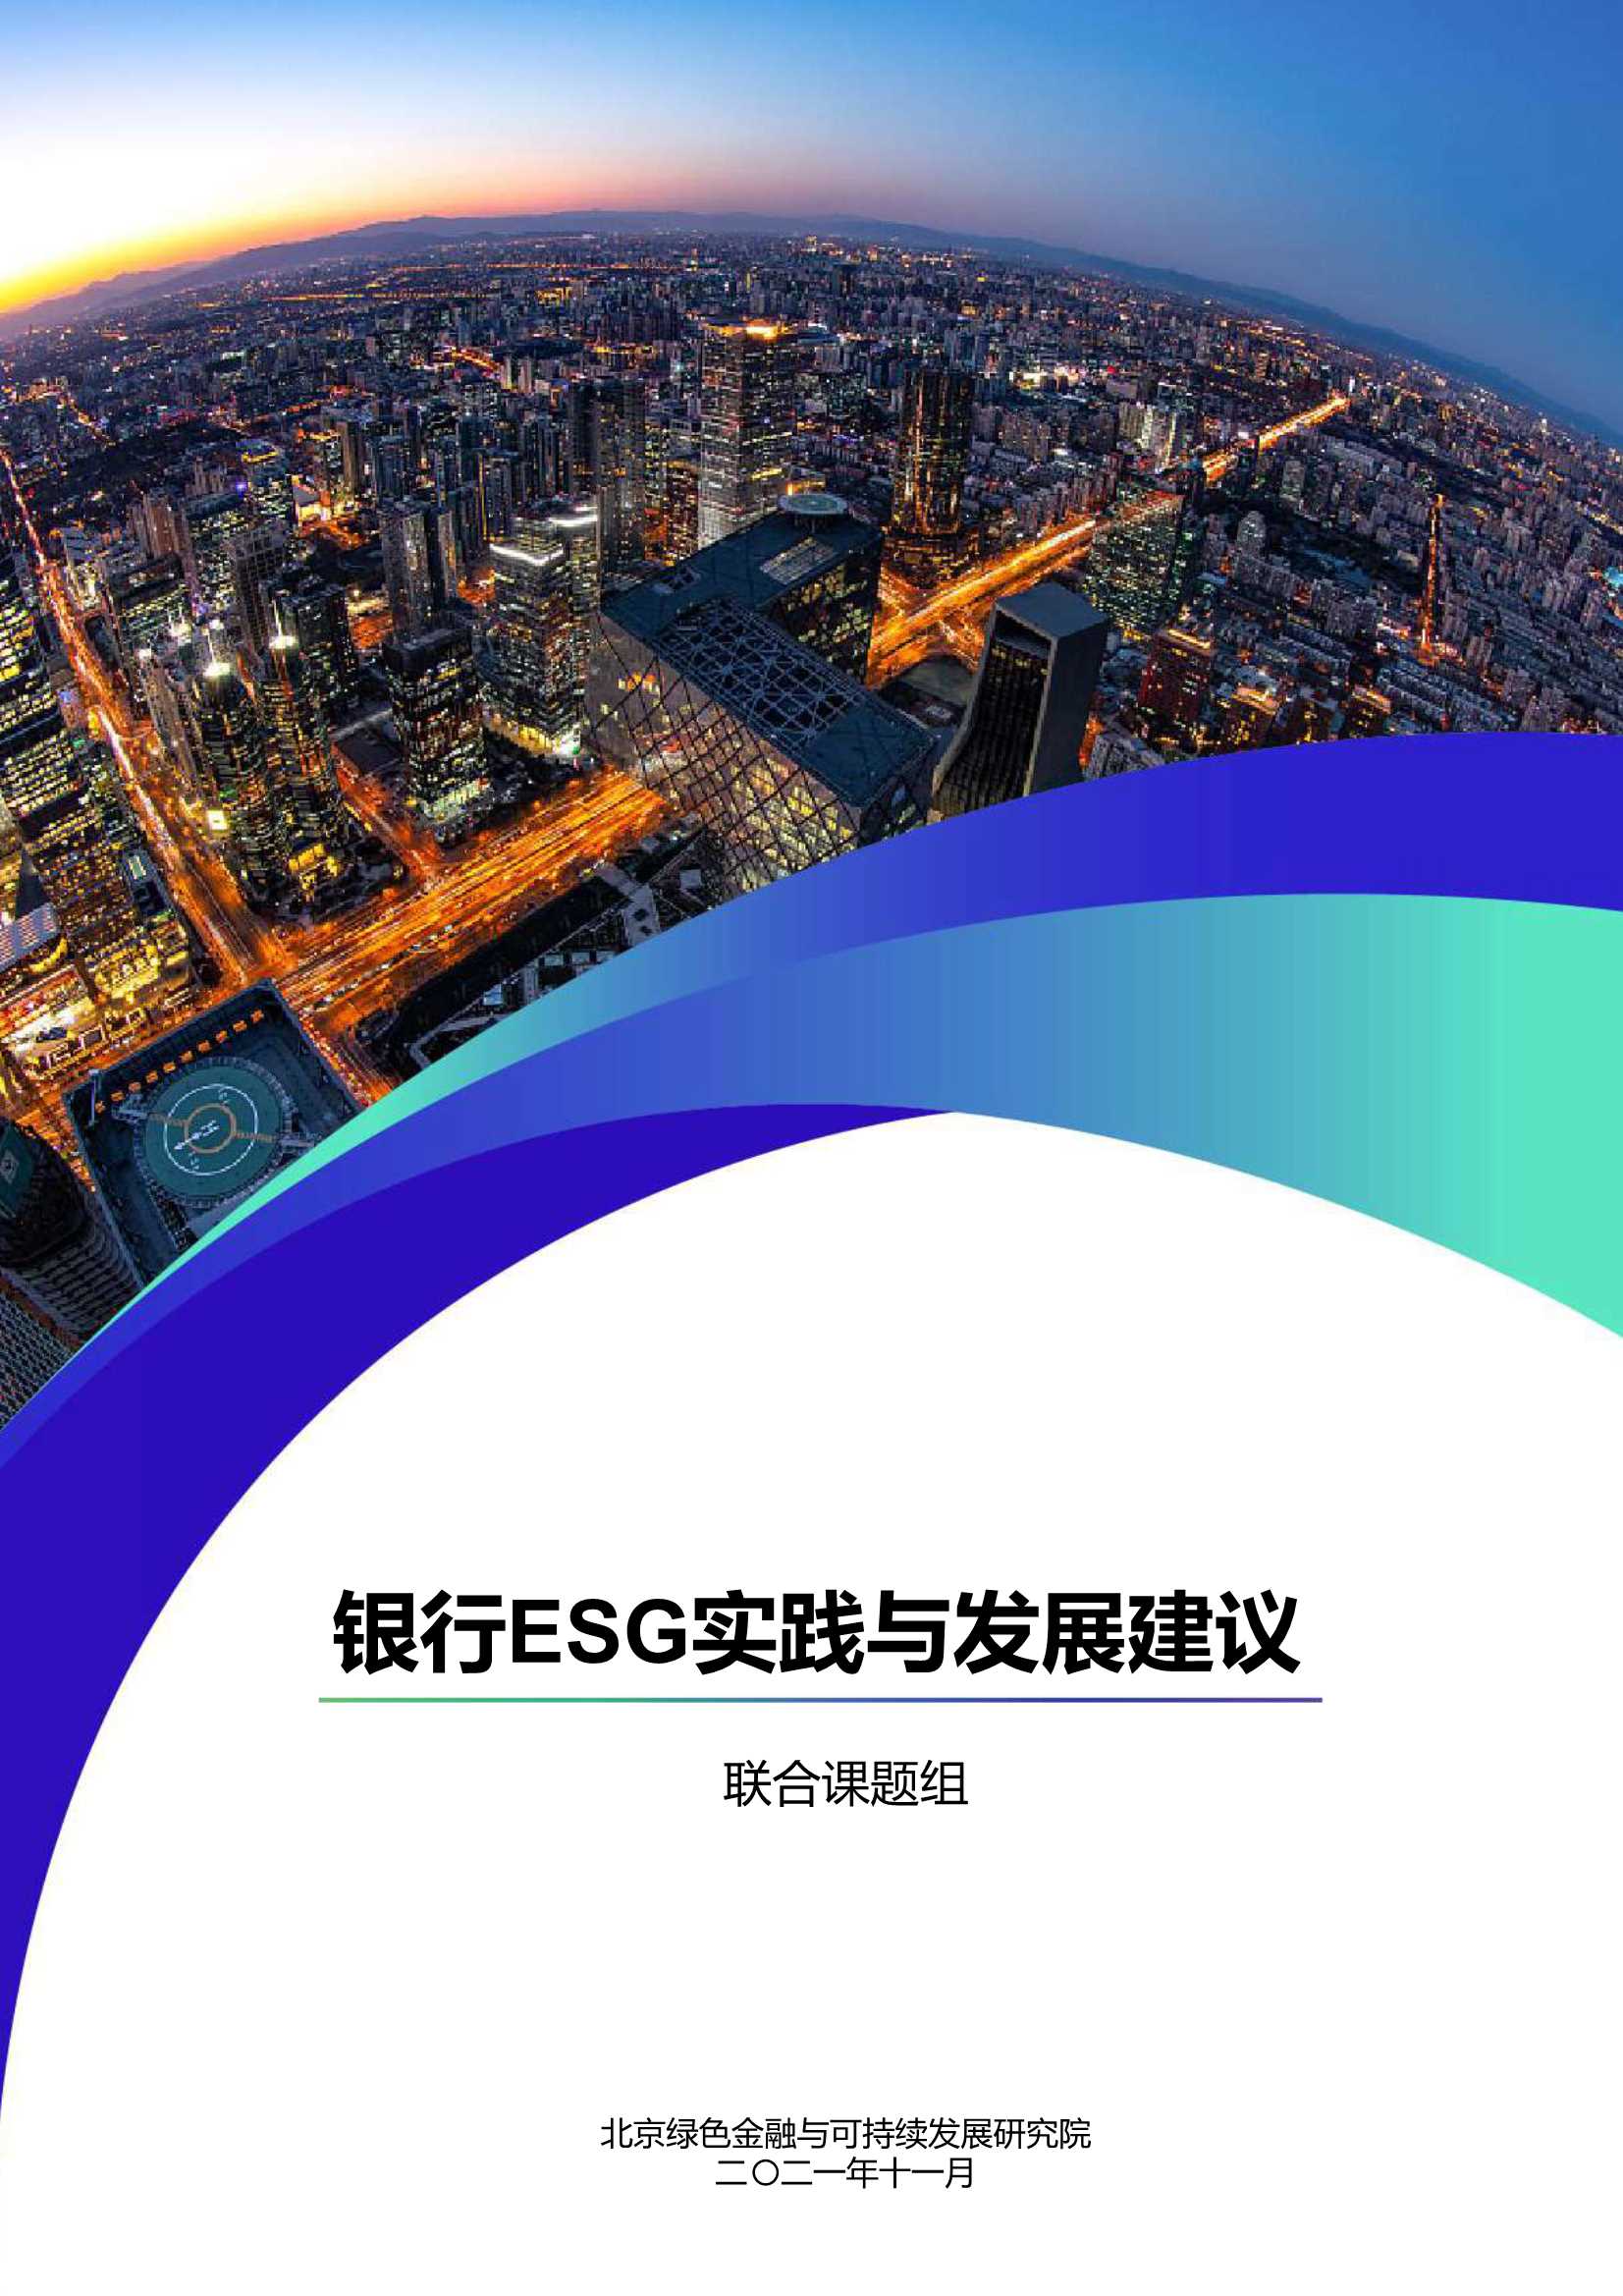 北京绿色金融与可持续发展研究院-银行ESG实践案例及发展建议-2021.12-36页